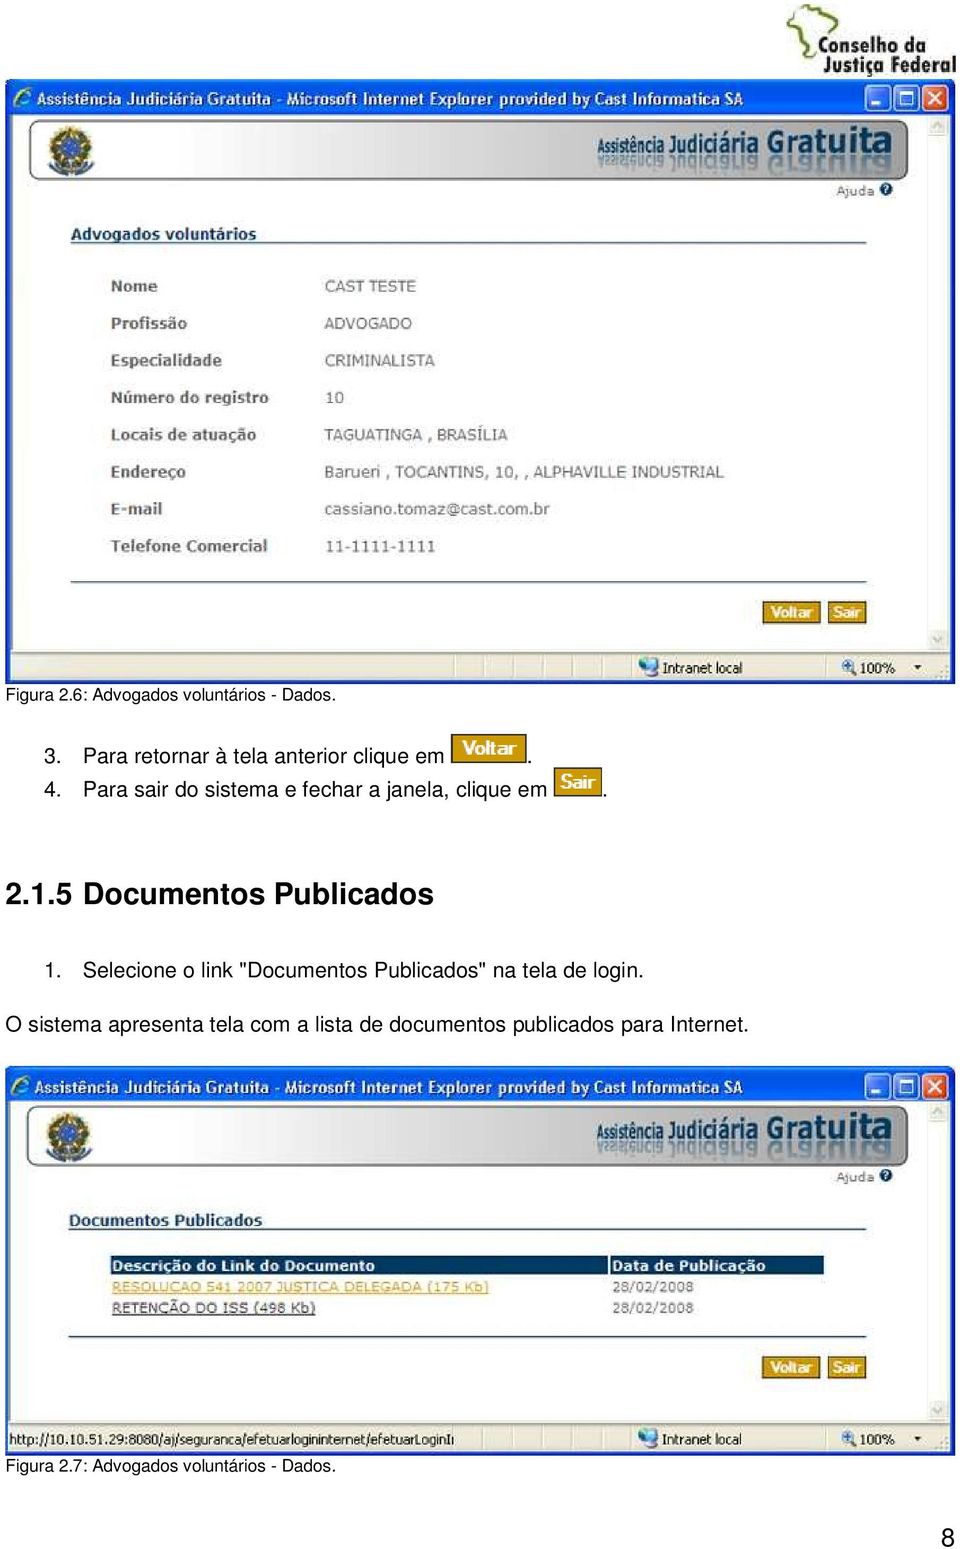 Selecione o link "Documentos Publicados" na tela de login.